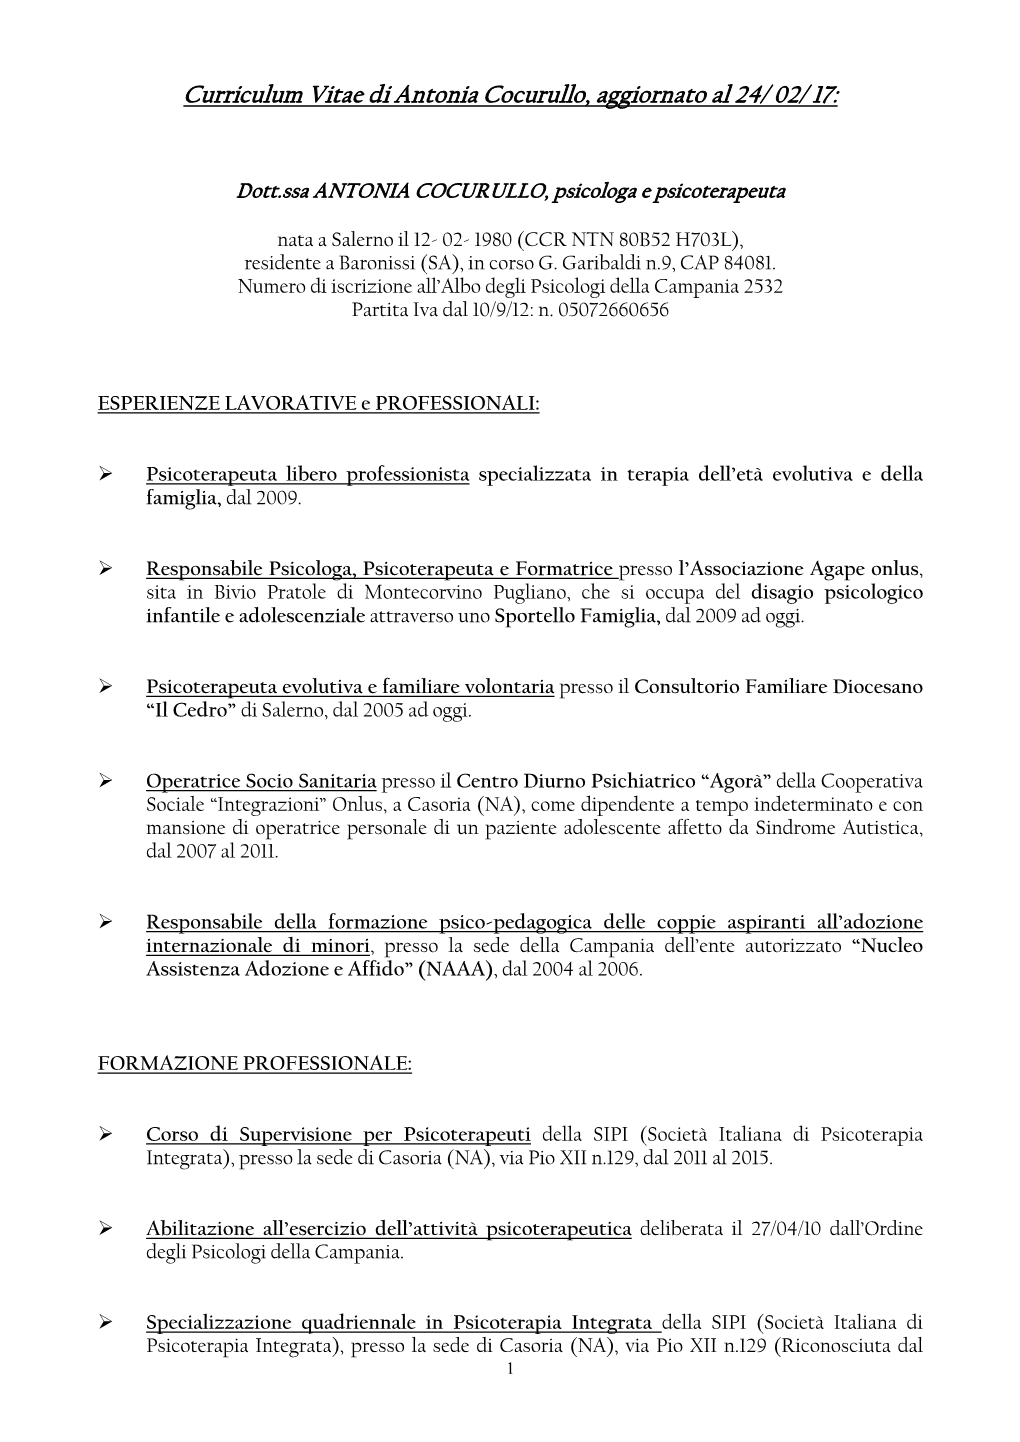 Curriculum Vitae Di Antonia Cocurullo, Aggiornato Al 24/ 02/ 17